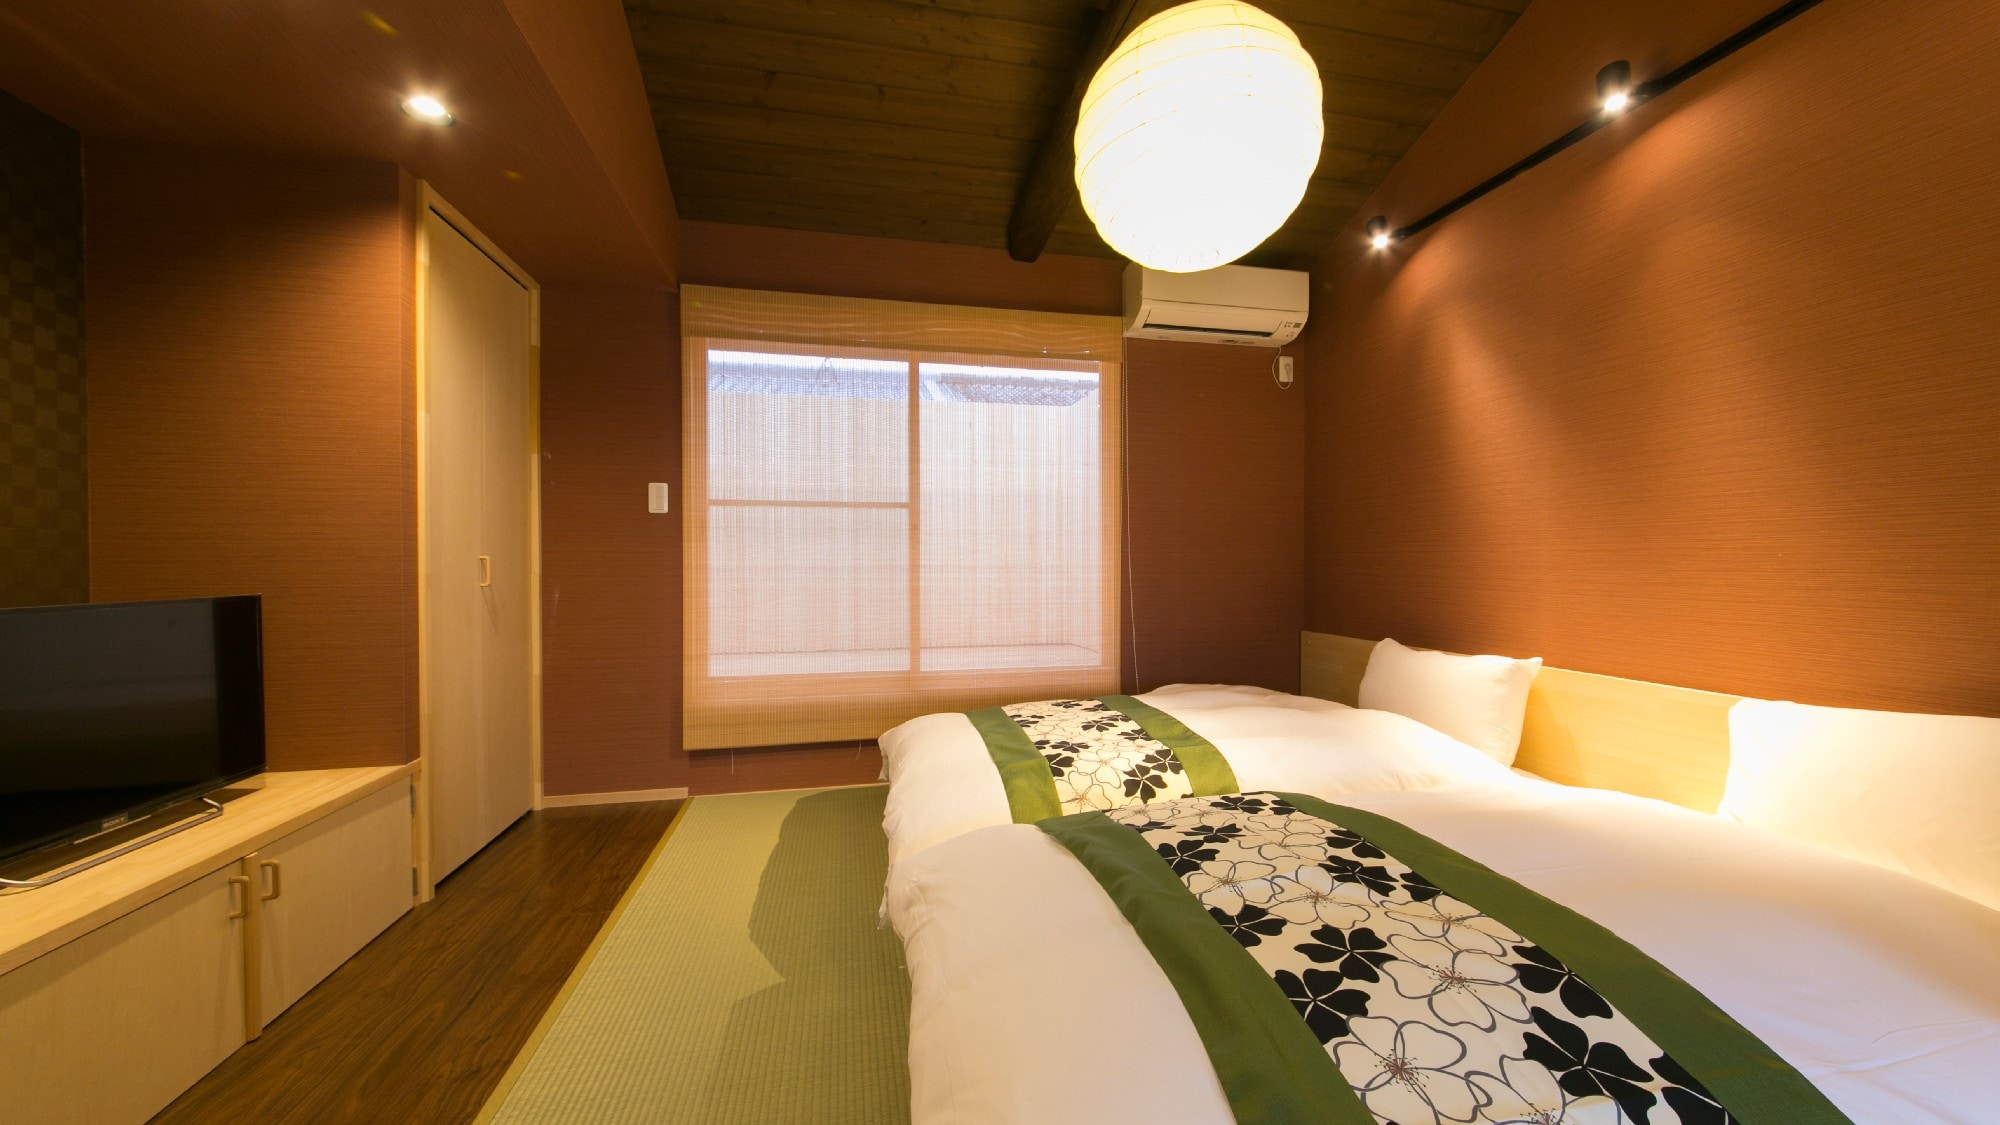 Kamar tidur kayuki lantai 2 umum untuk semua kamar